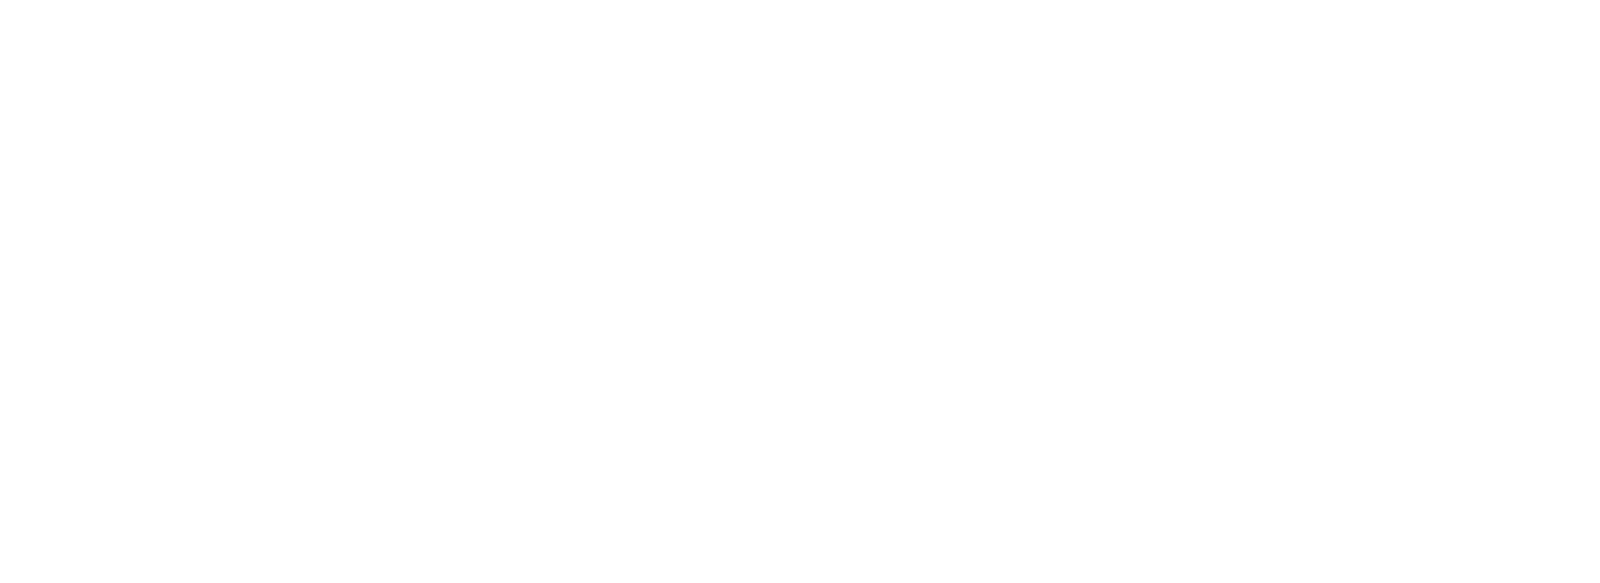 Logodol 全てが高画質 背景透過なアーティストのロゴをお届けするブログ Doberman Infinityの透過ロゴ３種